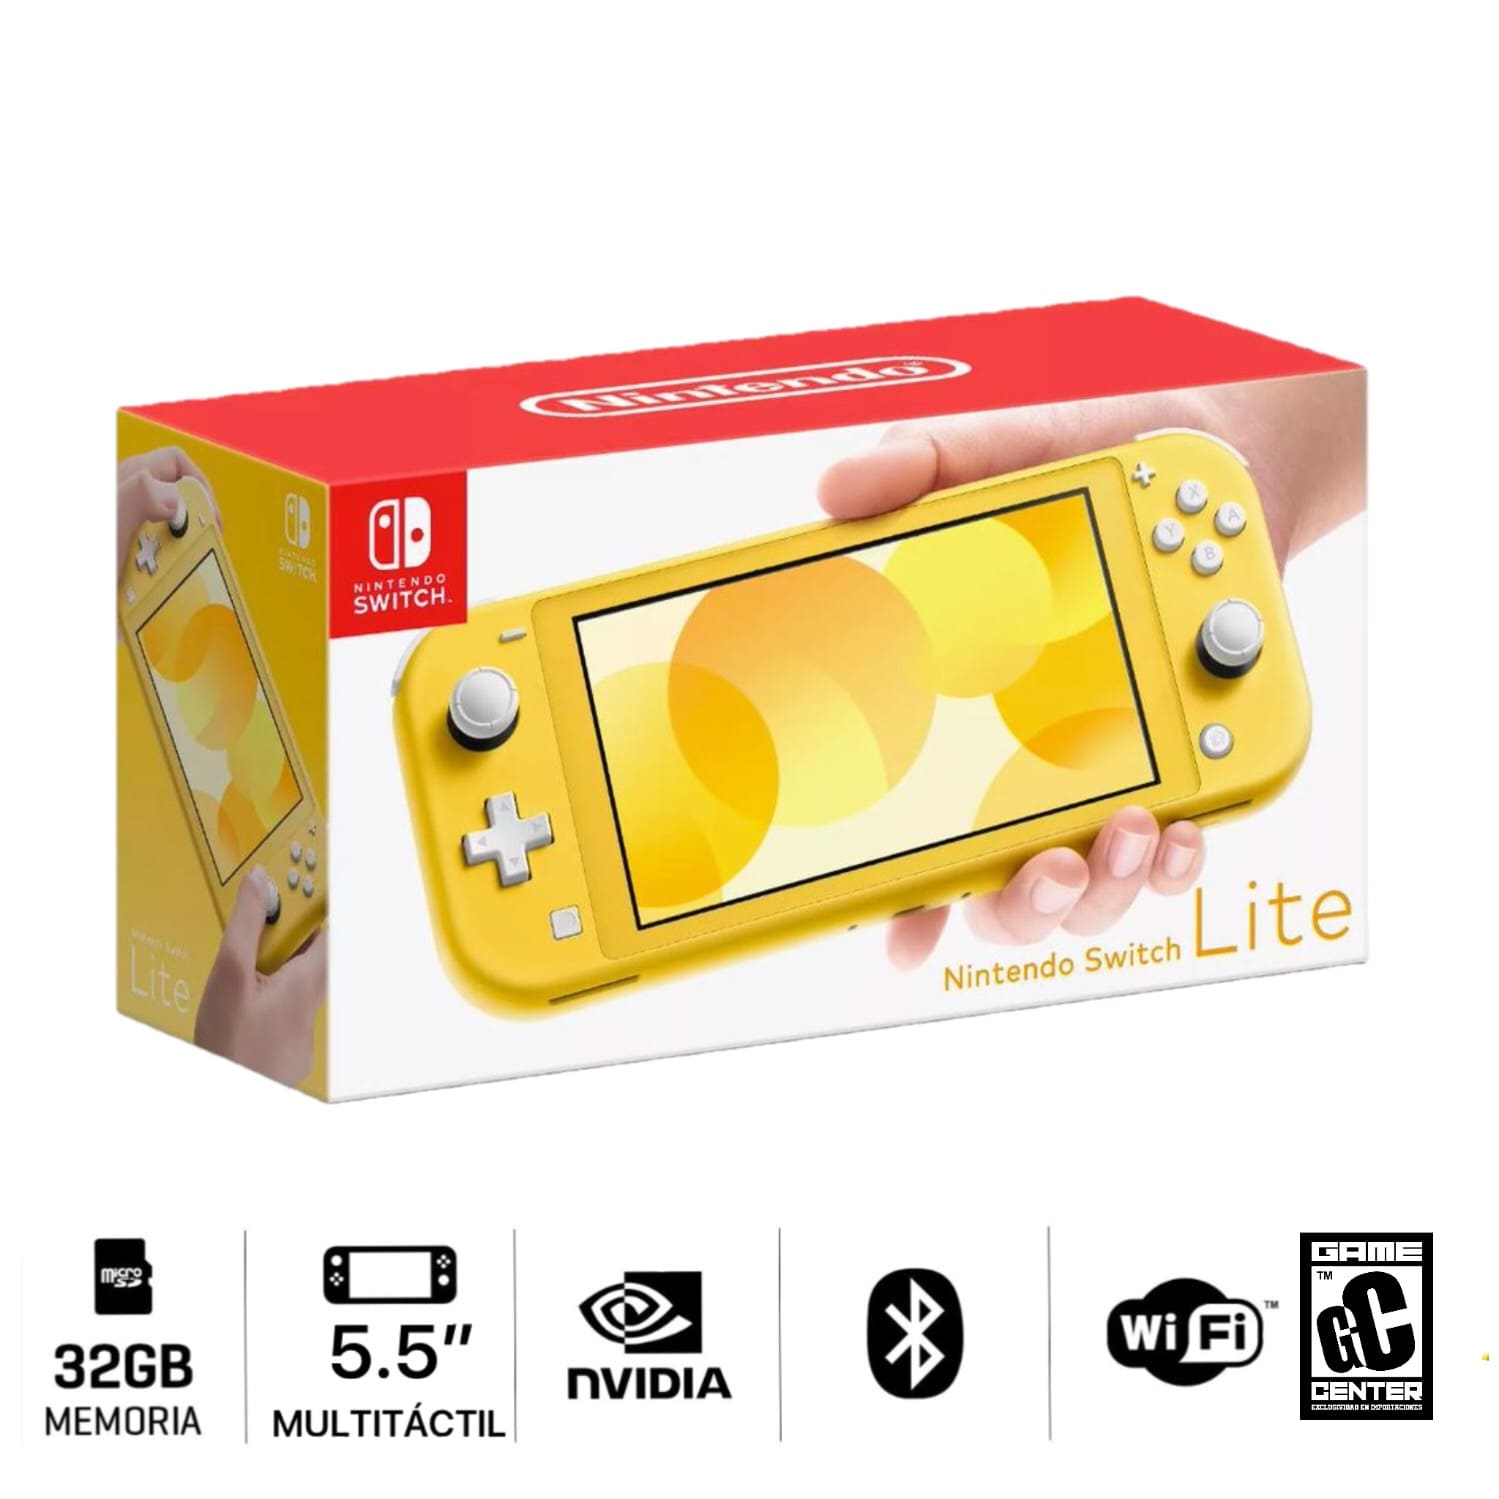 Consola Nintendo Switch Lite 5.5" LCD 32GB Color Amarillo